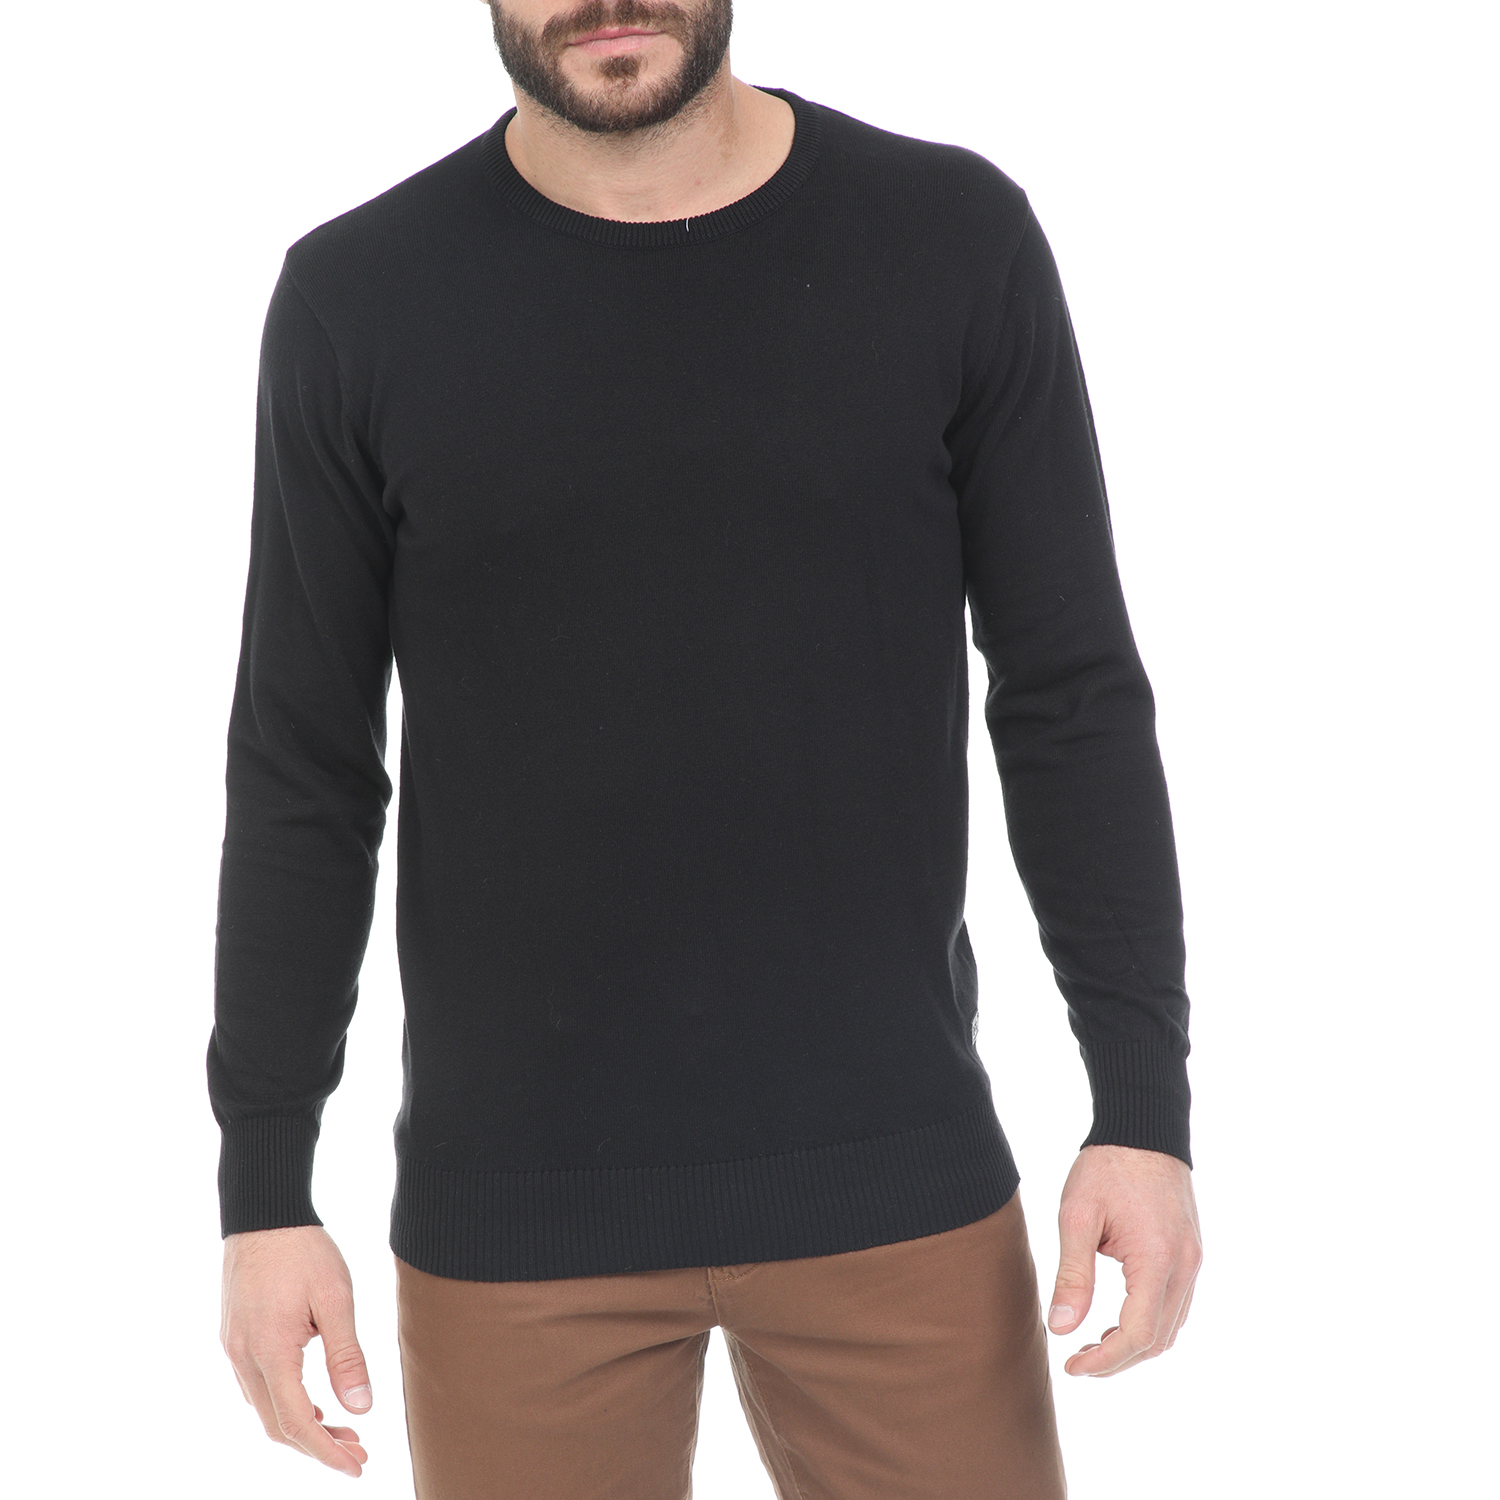 Ανδρικά/Ρούχα/Πλεκτά-Ζακέτες/Πουλόβερ CATAMARAN SAILWEAR - Ανδρική πλεκτή μπλούζα CATAMARAN SAILWEAR μαύρη